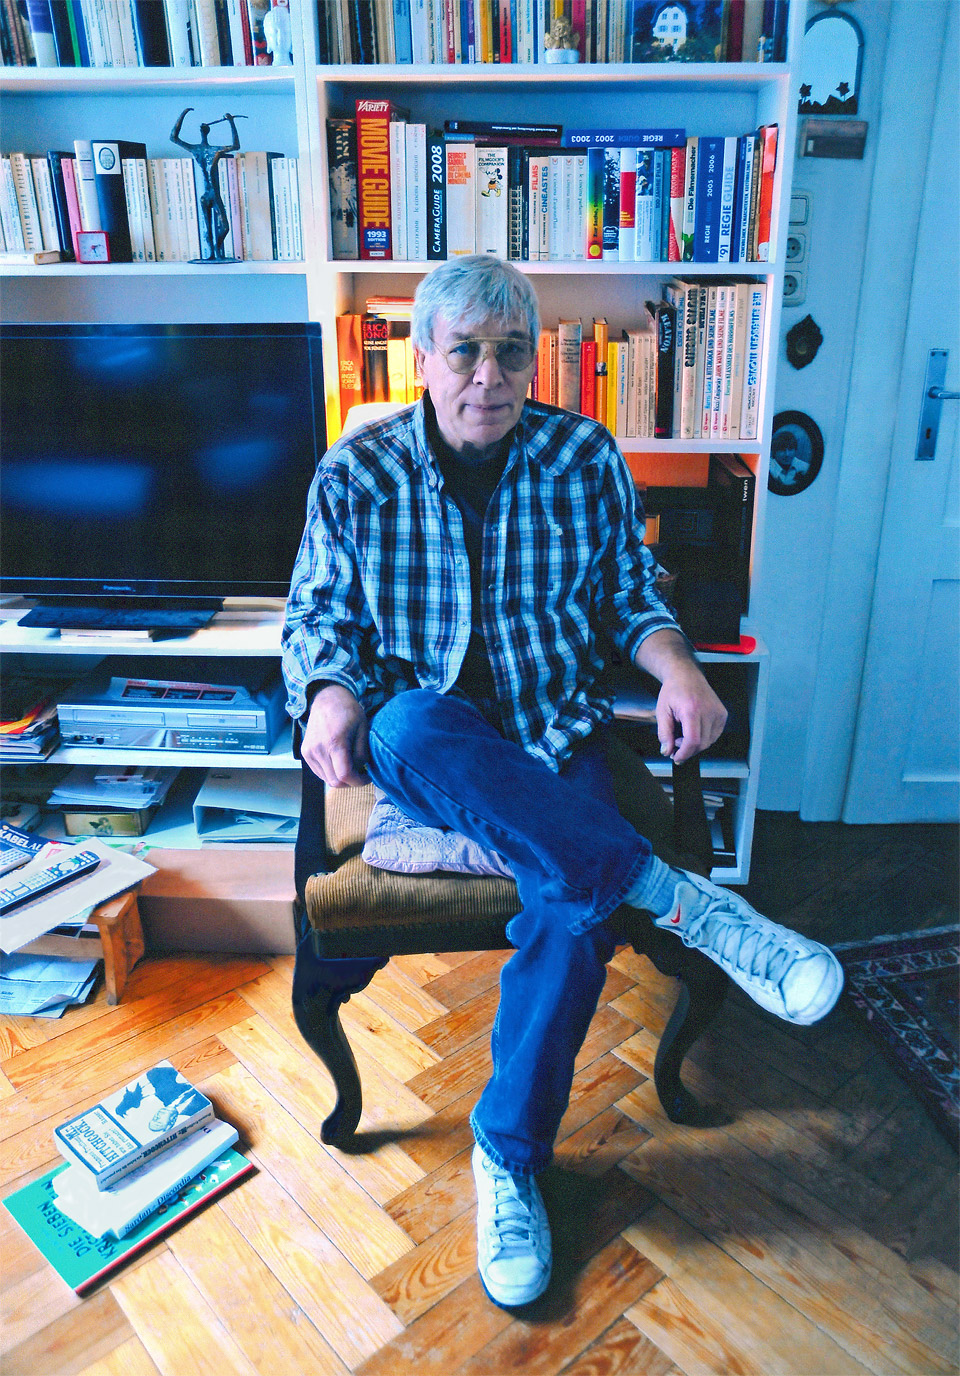 Werner Enke (älter) im Wohnzimmer in München-Schwabing auf einem Sessel sitzend vor einem Bücherregal